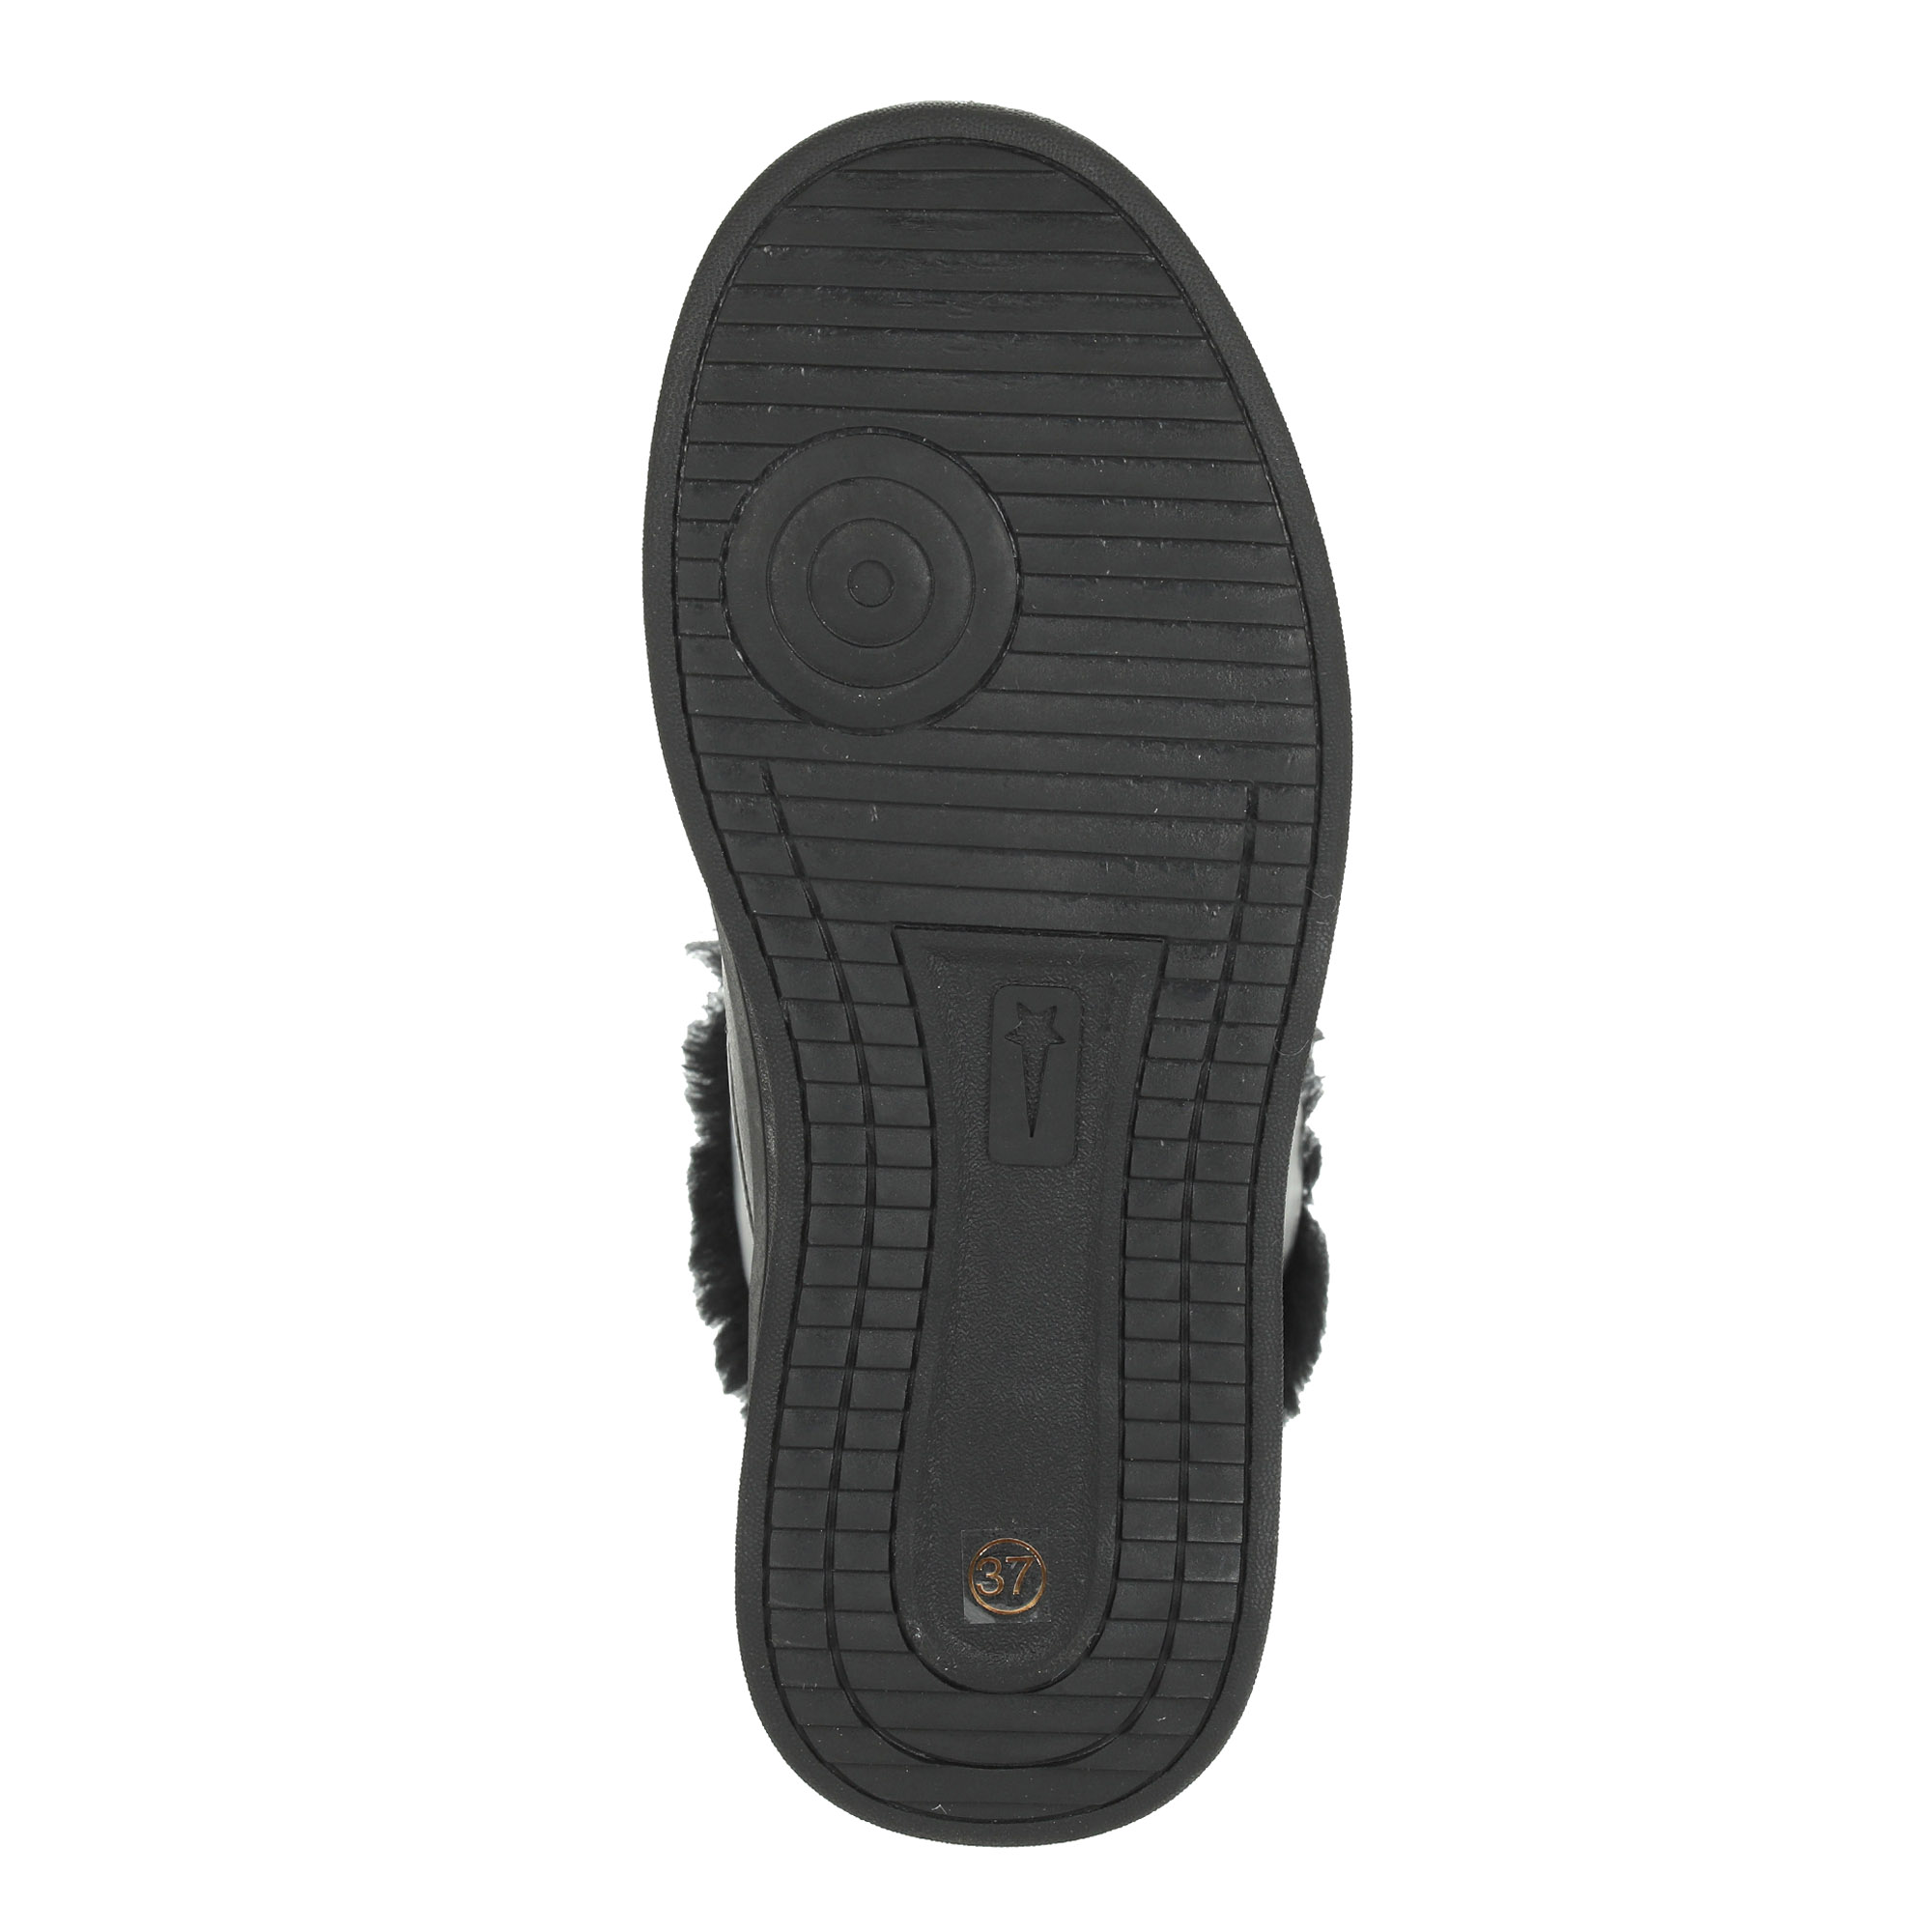 Черные высокие кроссовки из комбинированных материалов смеховой опушкой на подкладке из натуральной шерсти на утолщенной платформе Respect, размер 38, цвет черный - фото 8